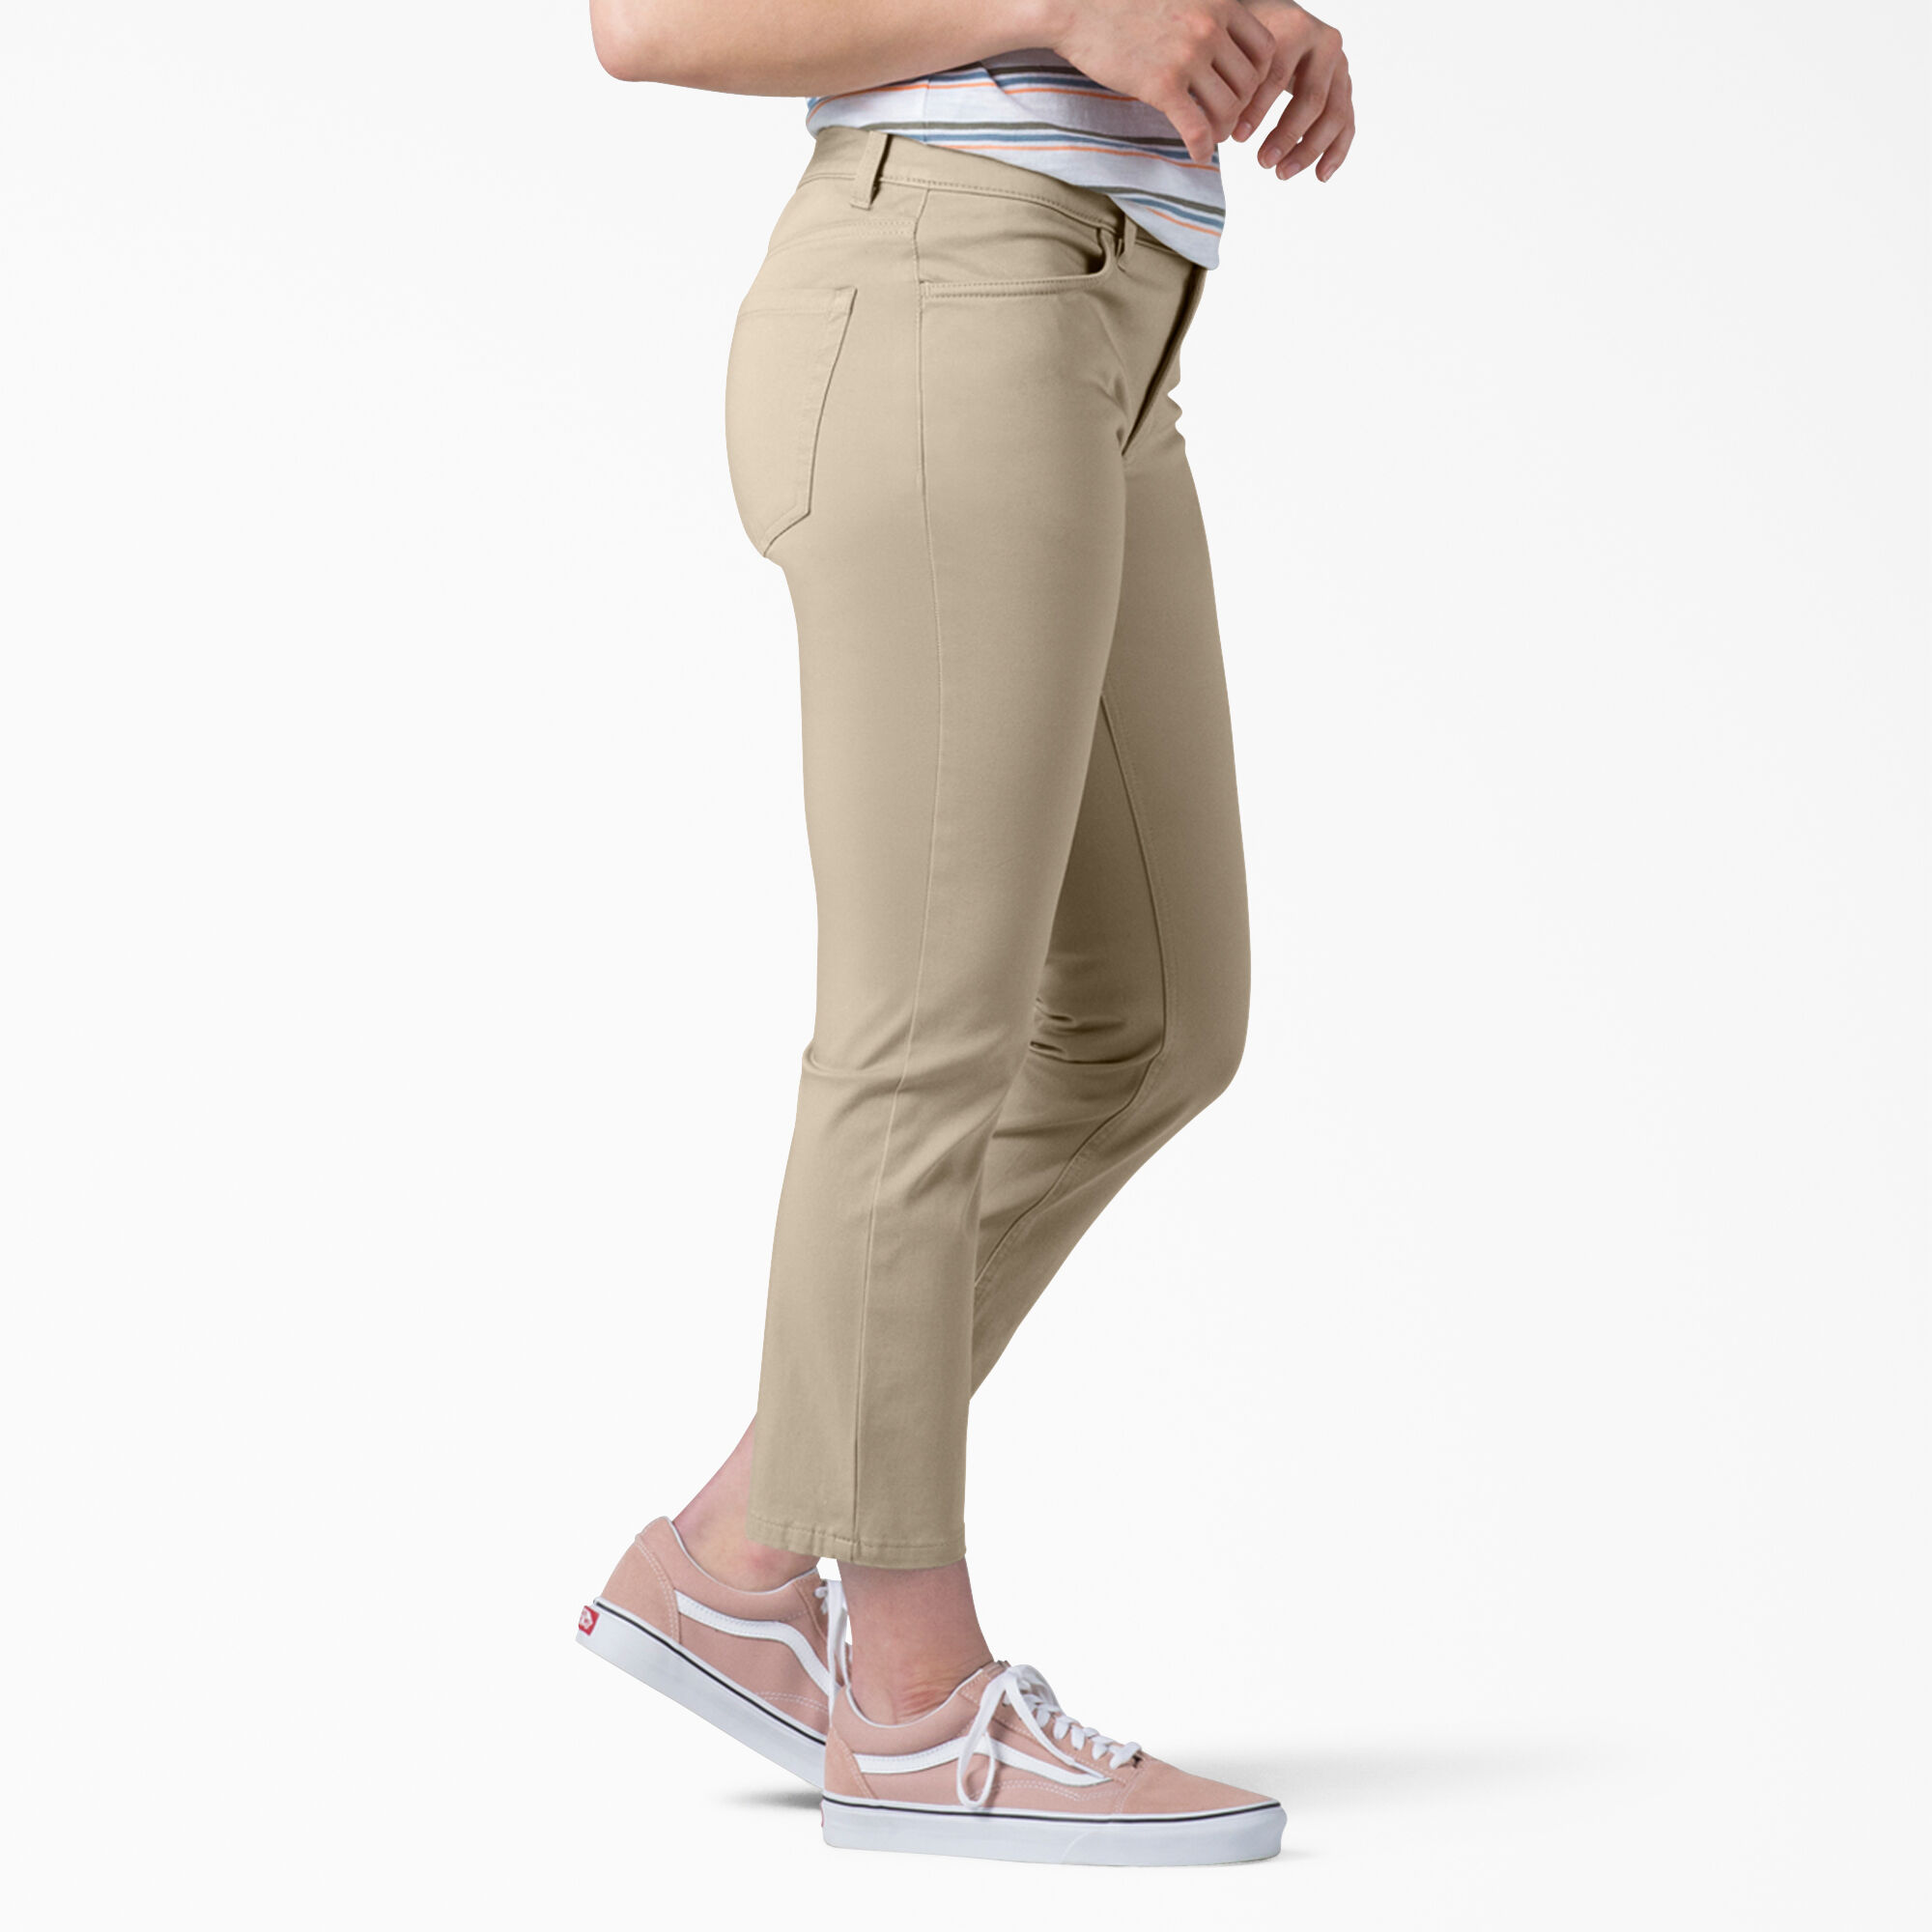 Women's Perfect Shape Skinny Fit Capri Pants - Dickies US, Rinsed